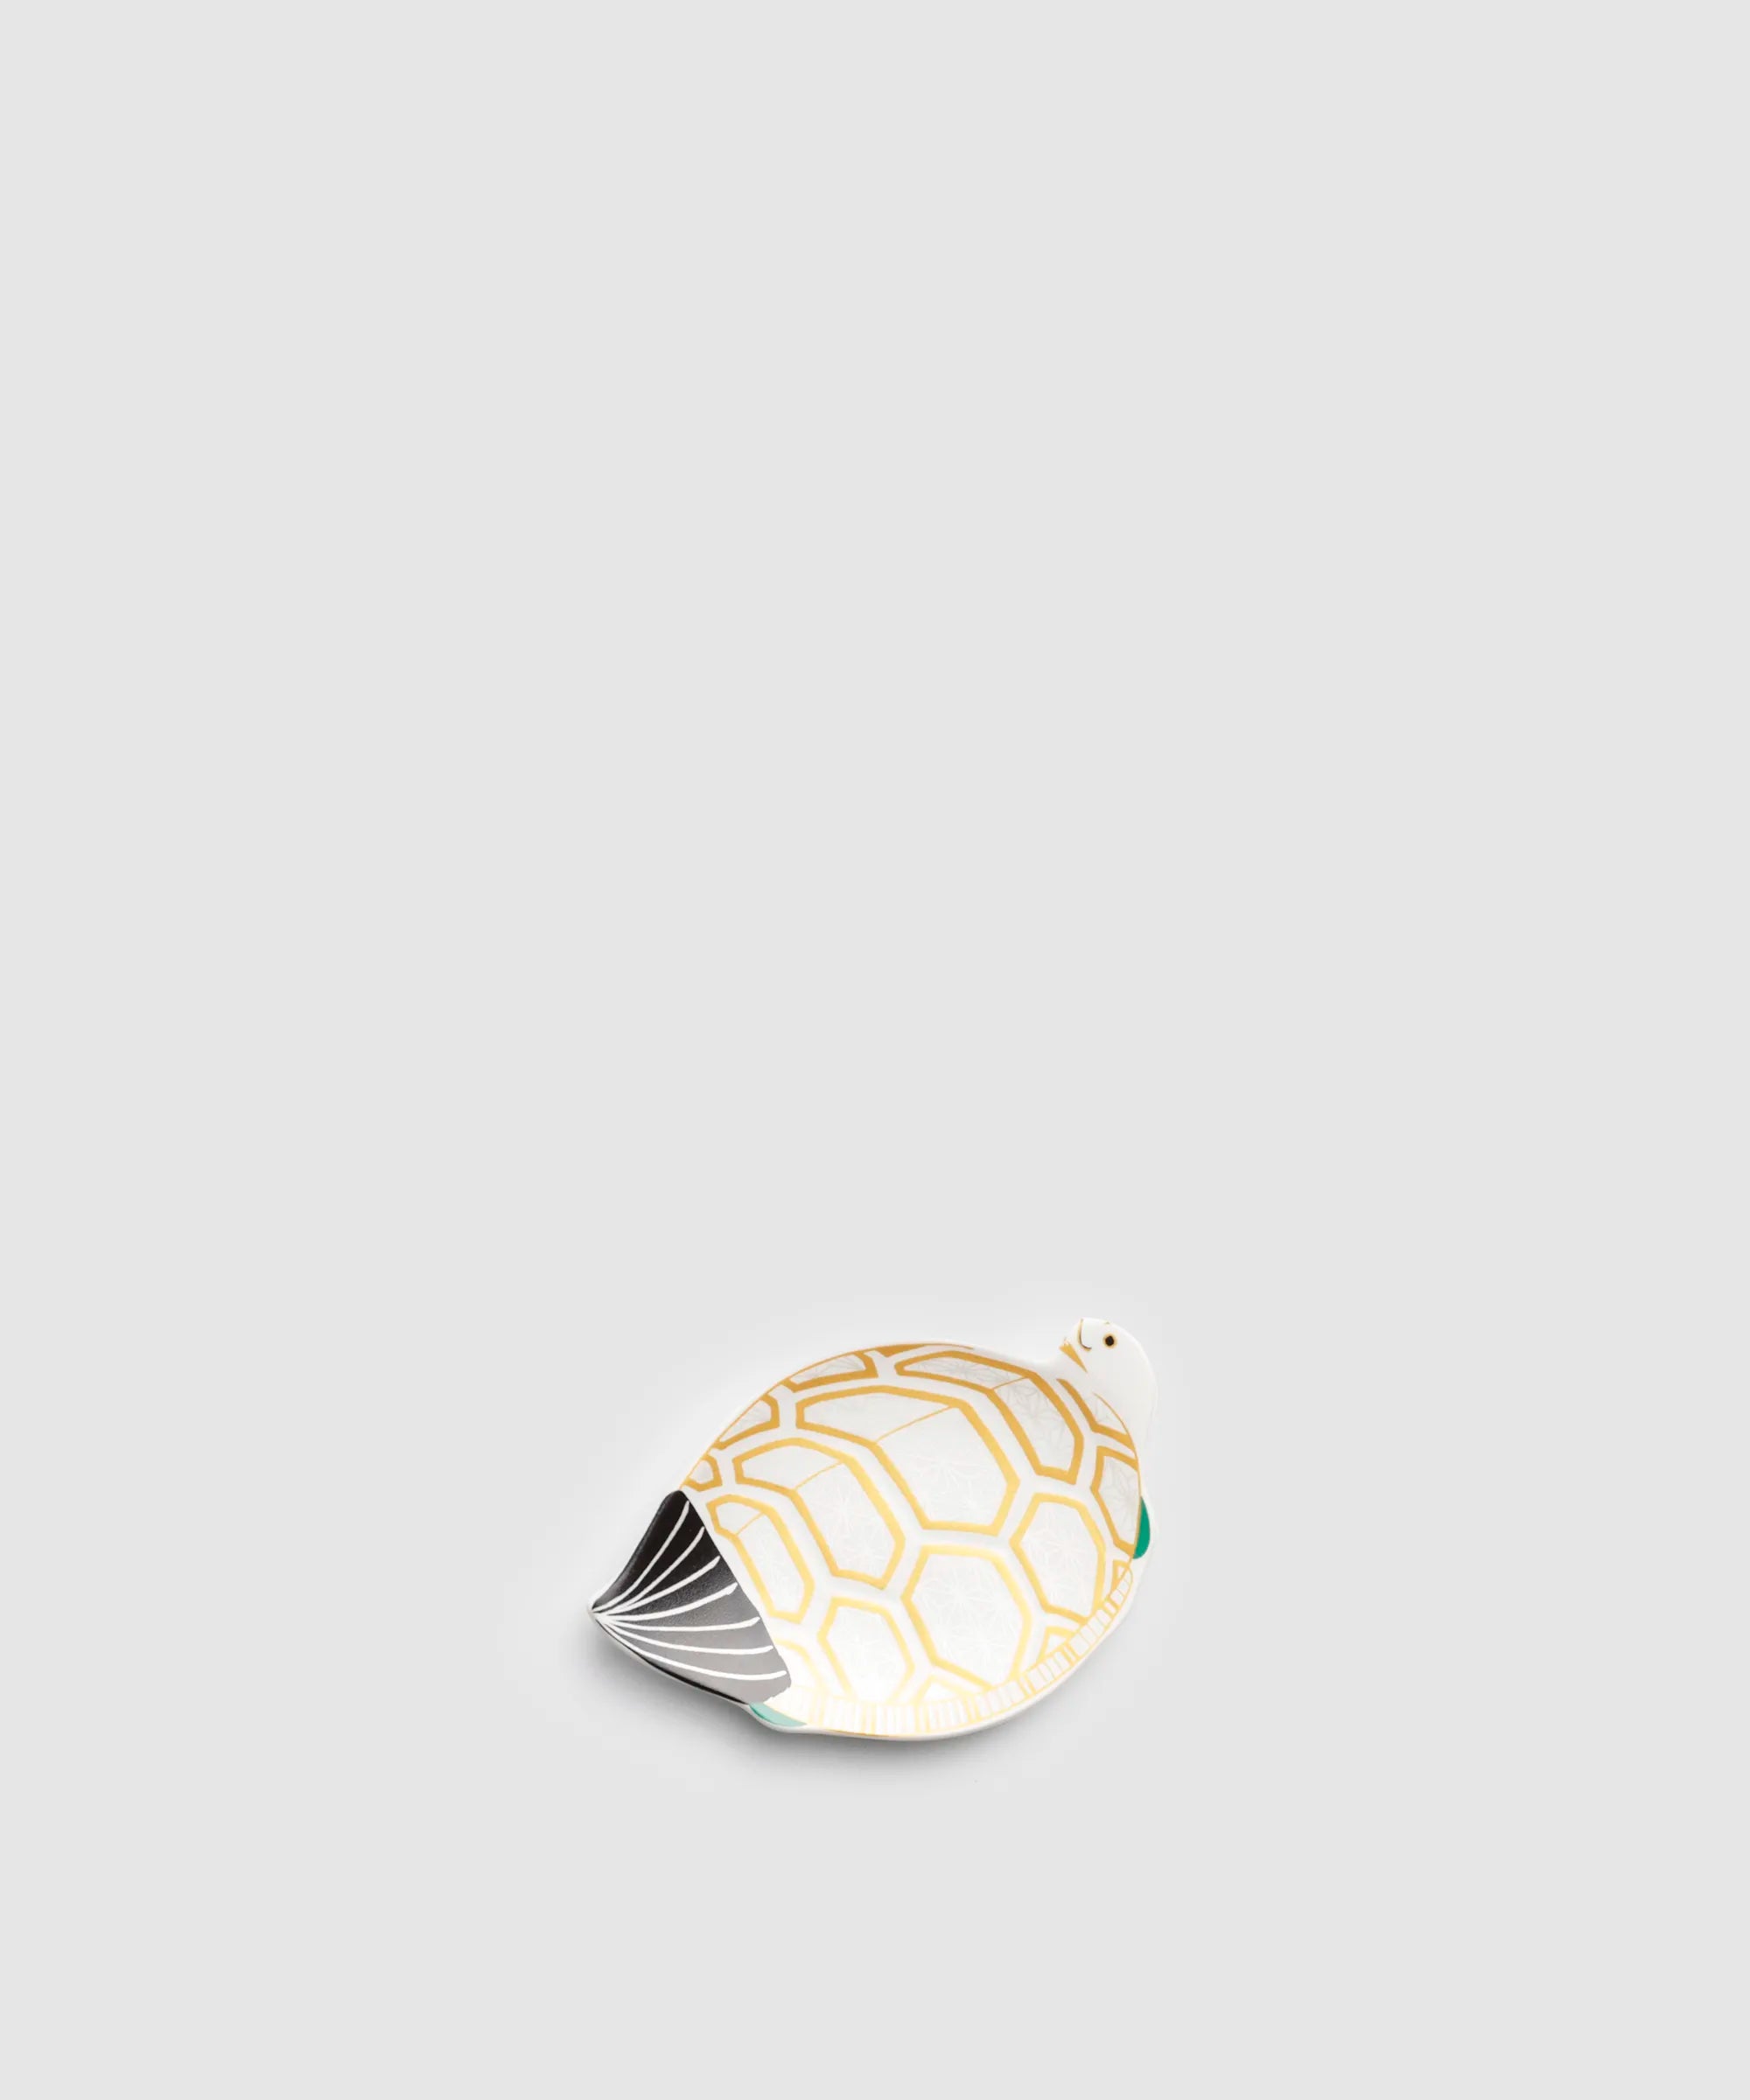 錦雪衣菱紋様 - 亀型小皿